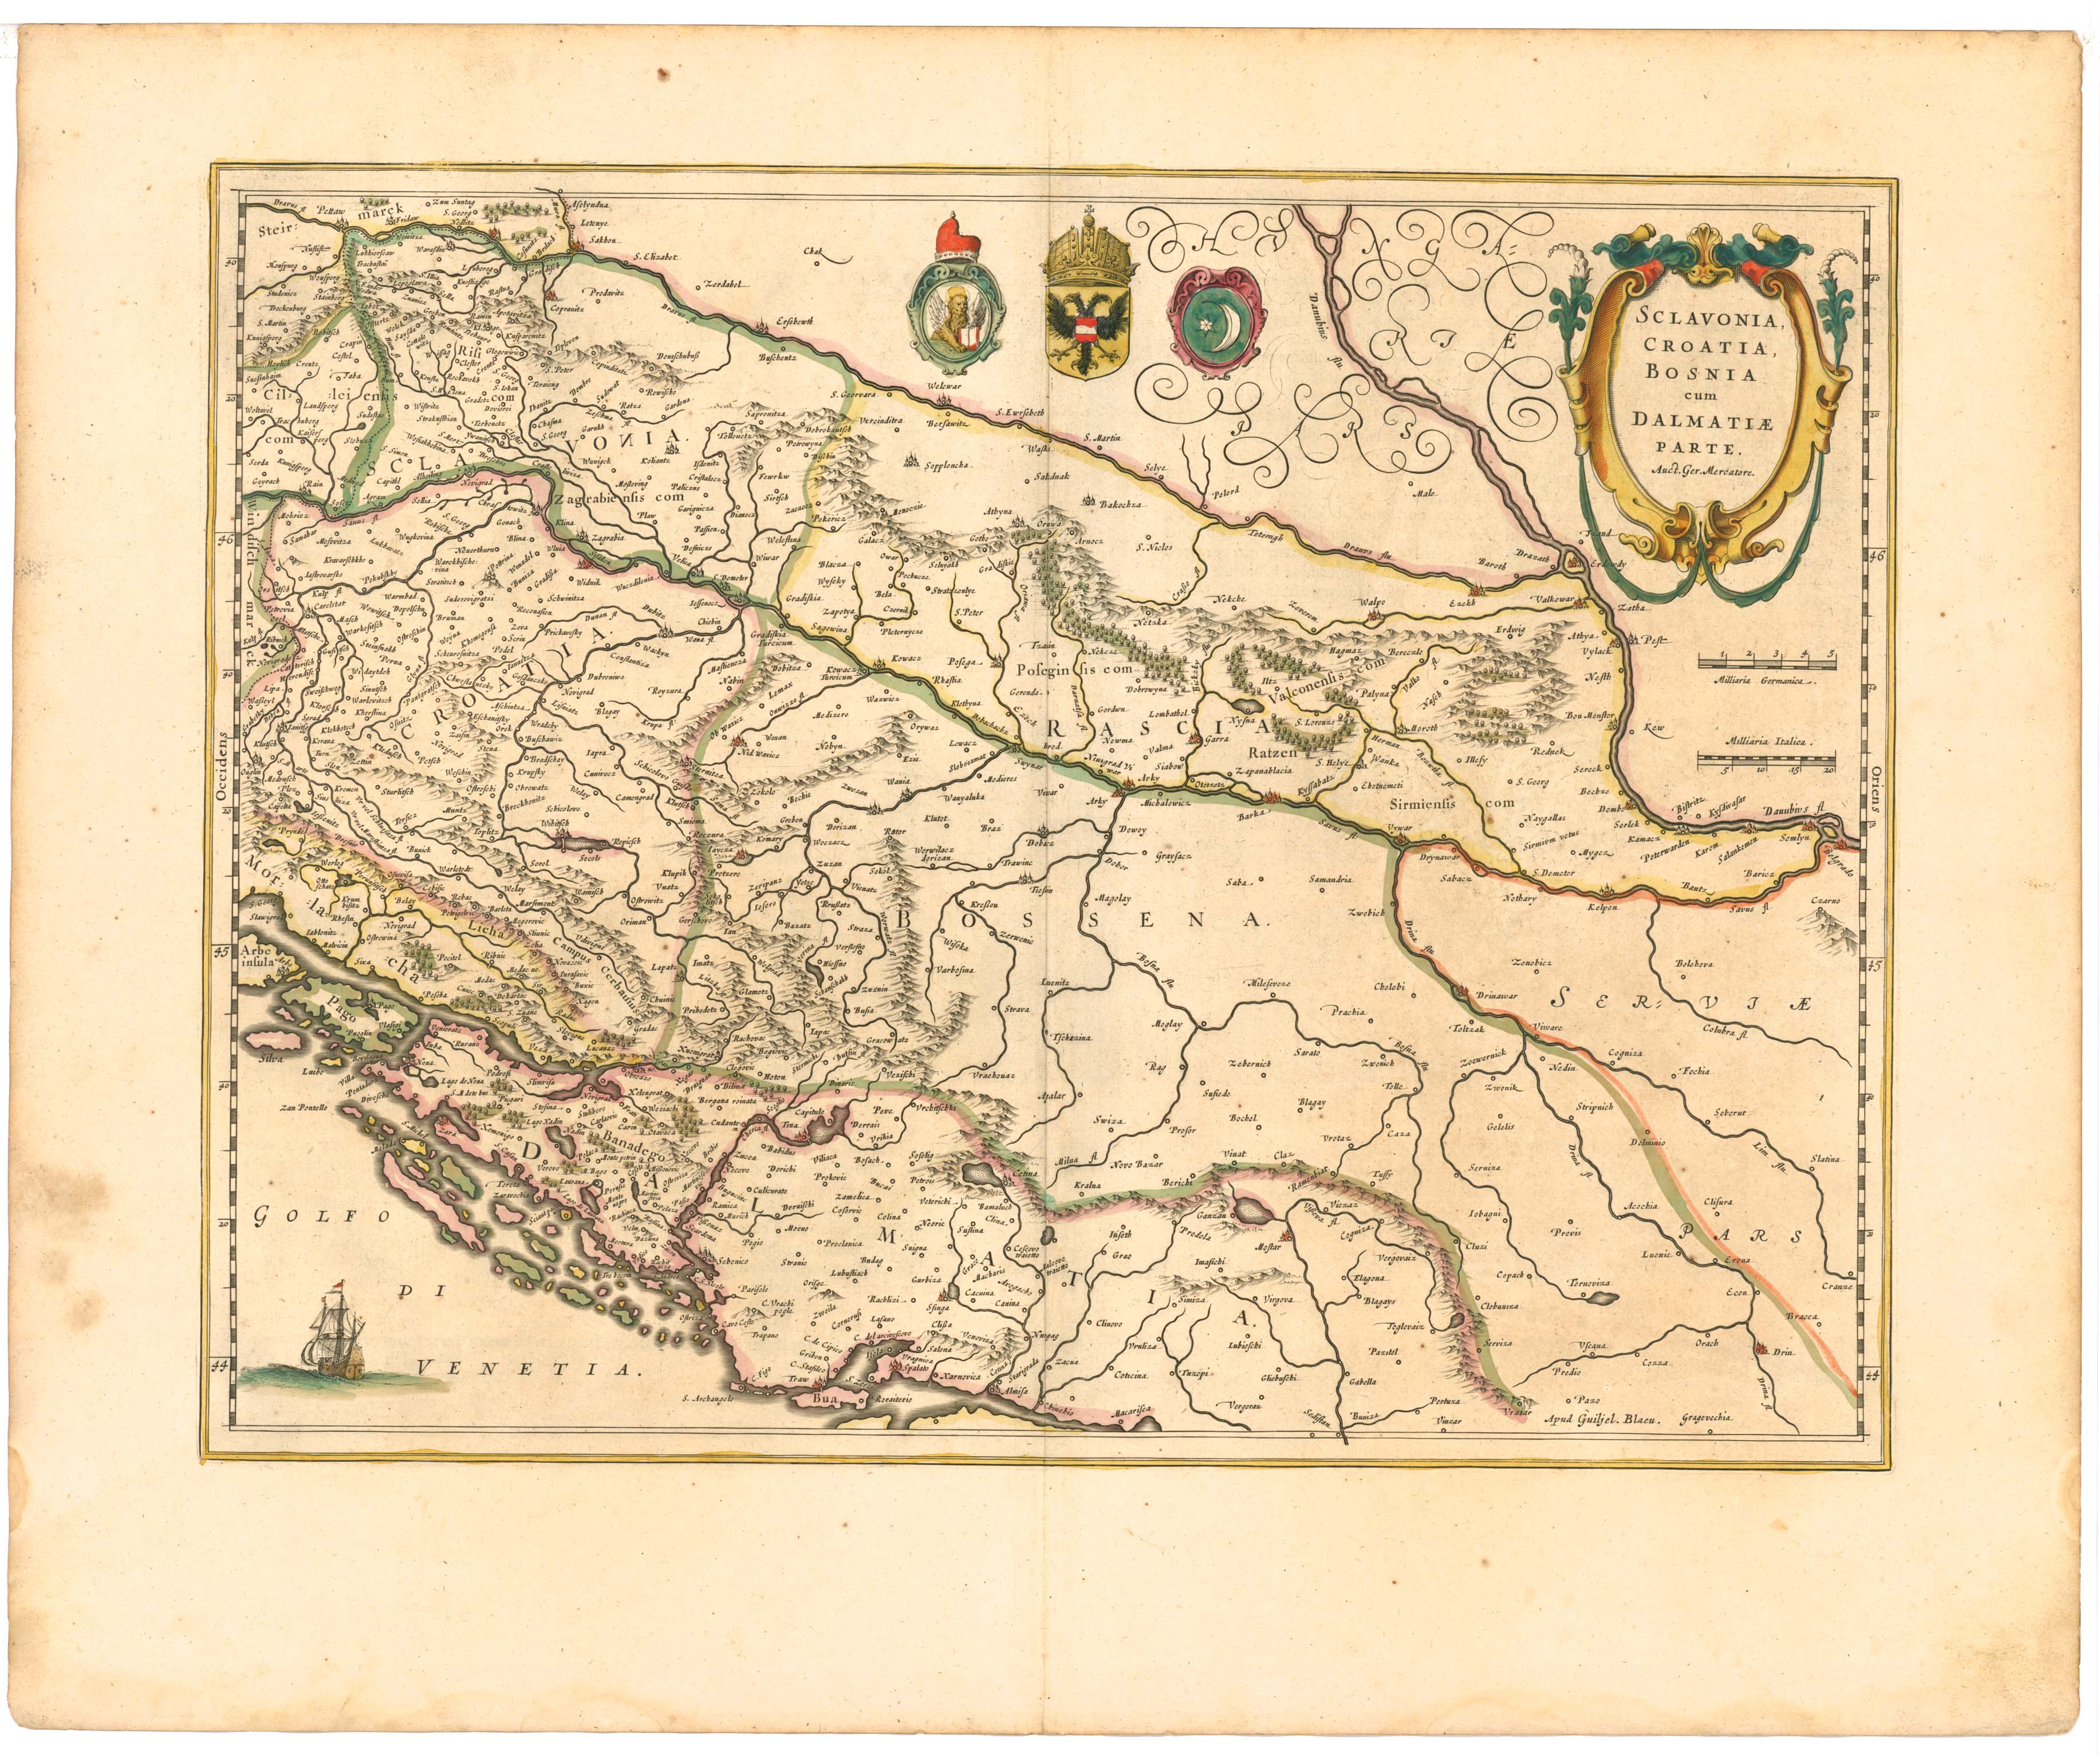 Blaeu 1645 - Sclavonia Croatia Bosnia cum Dalmatiæ parte